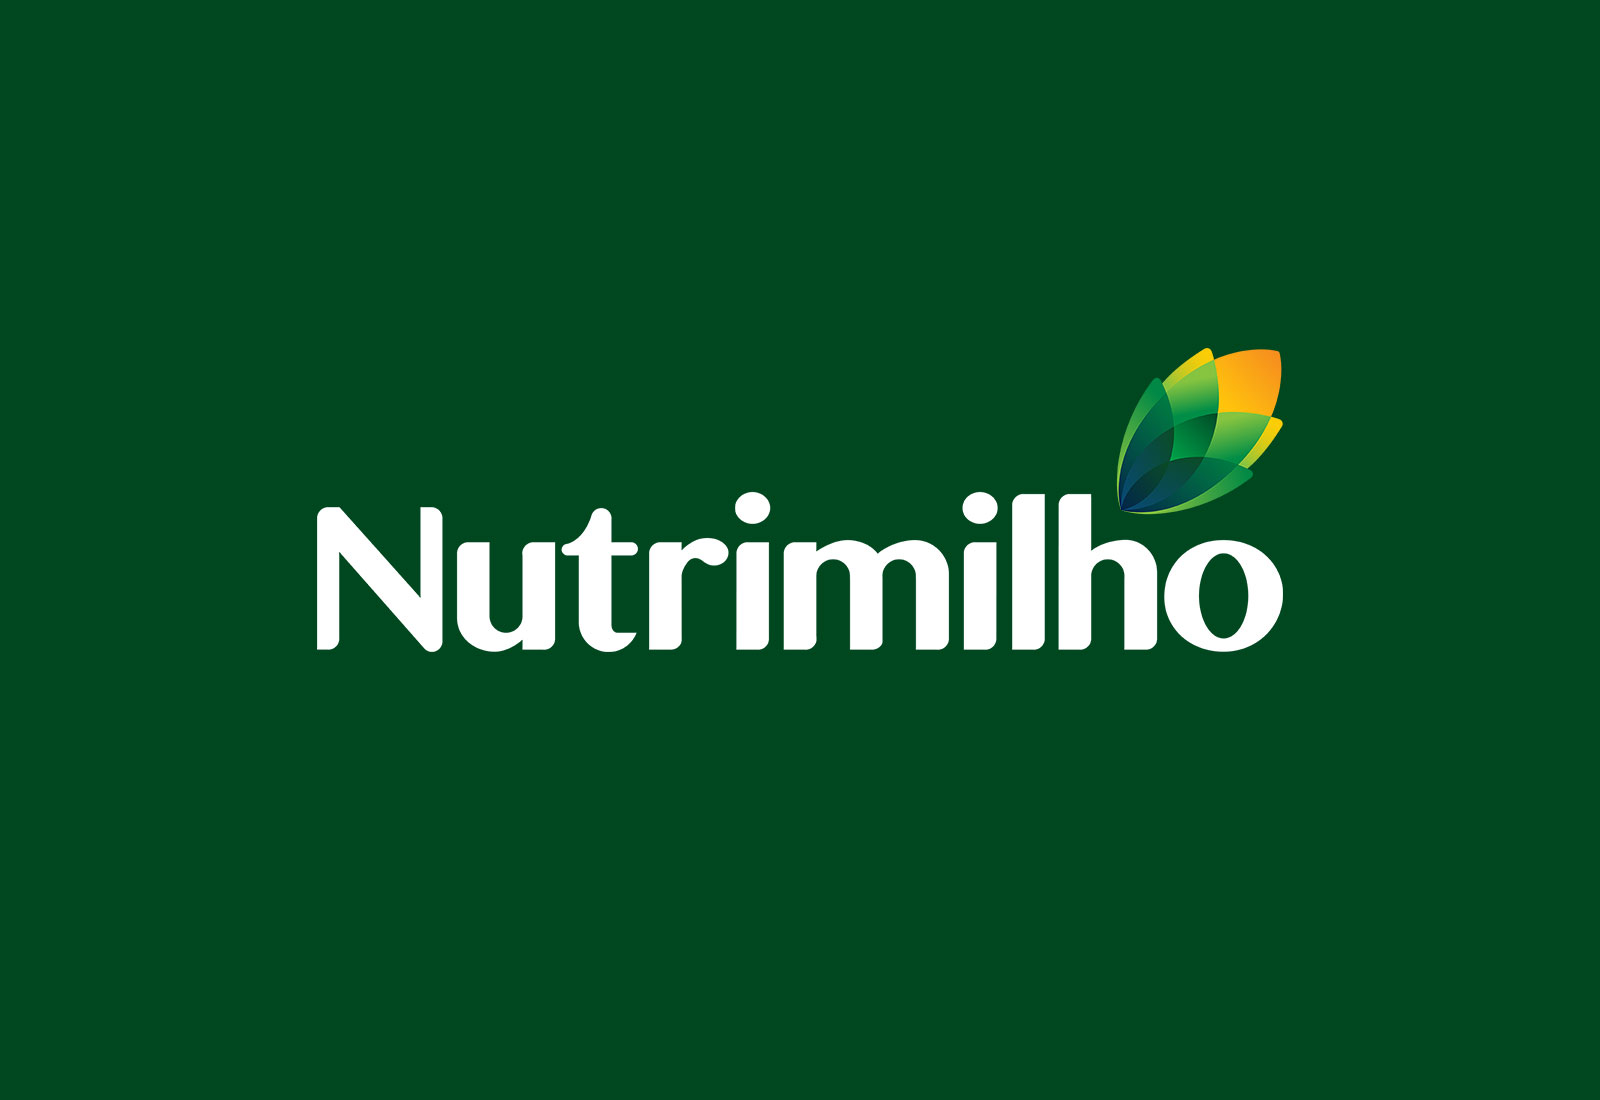 (c) Nutrimilho.com.br